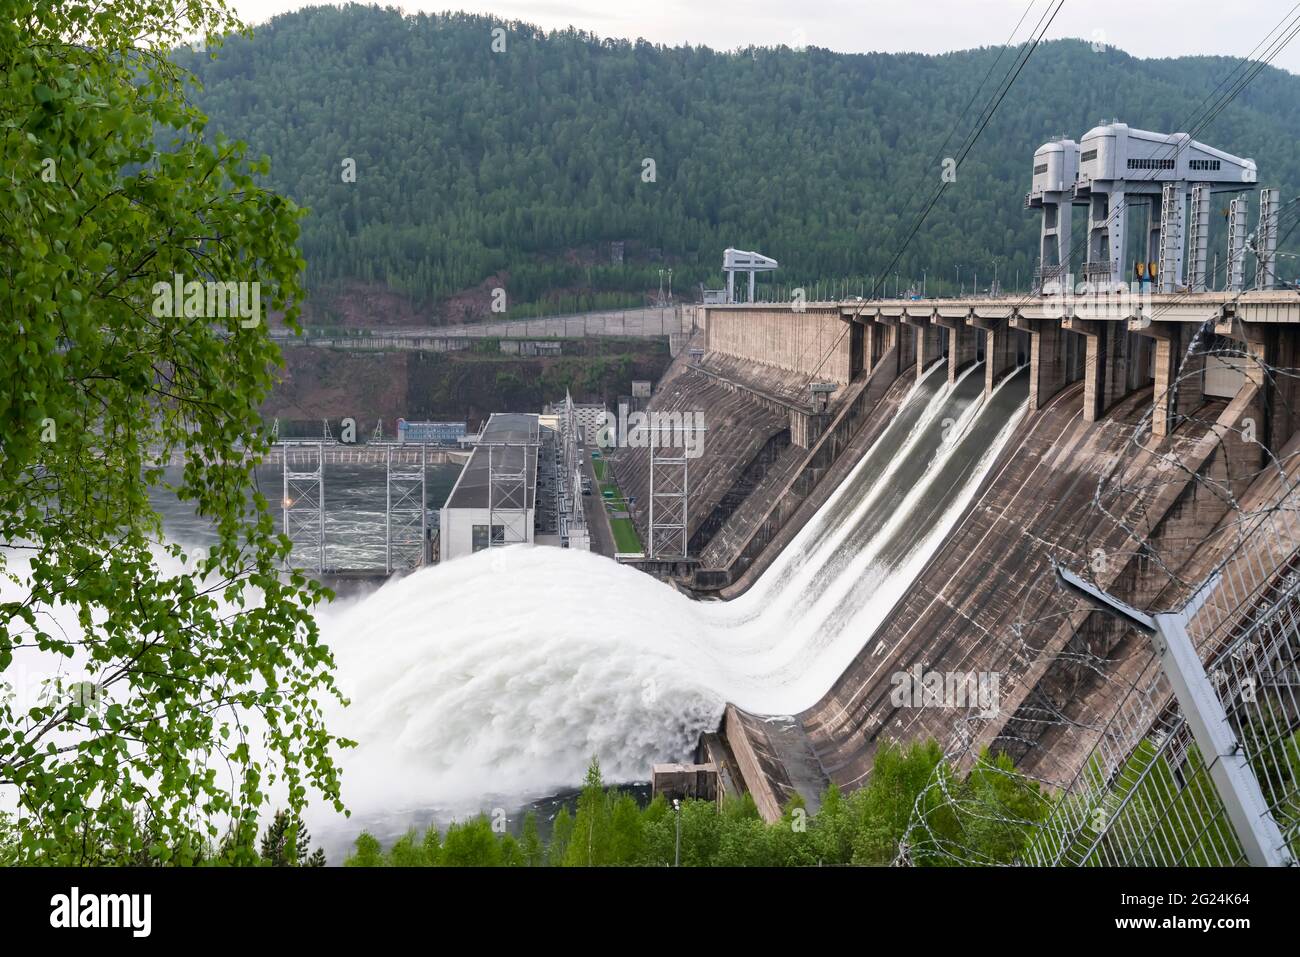 Vague de drainage d'eau, écoulement rapide d'eau à la centrale hydroélectrique du barrage de Krasnoyarsk en Russie. Inondations et vagues de surf. Banque D'Images